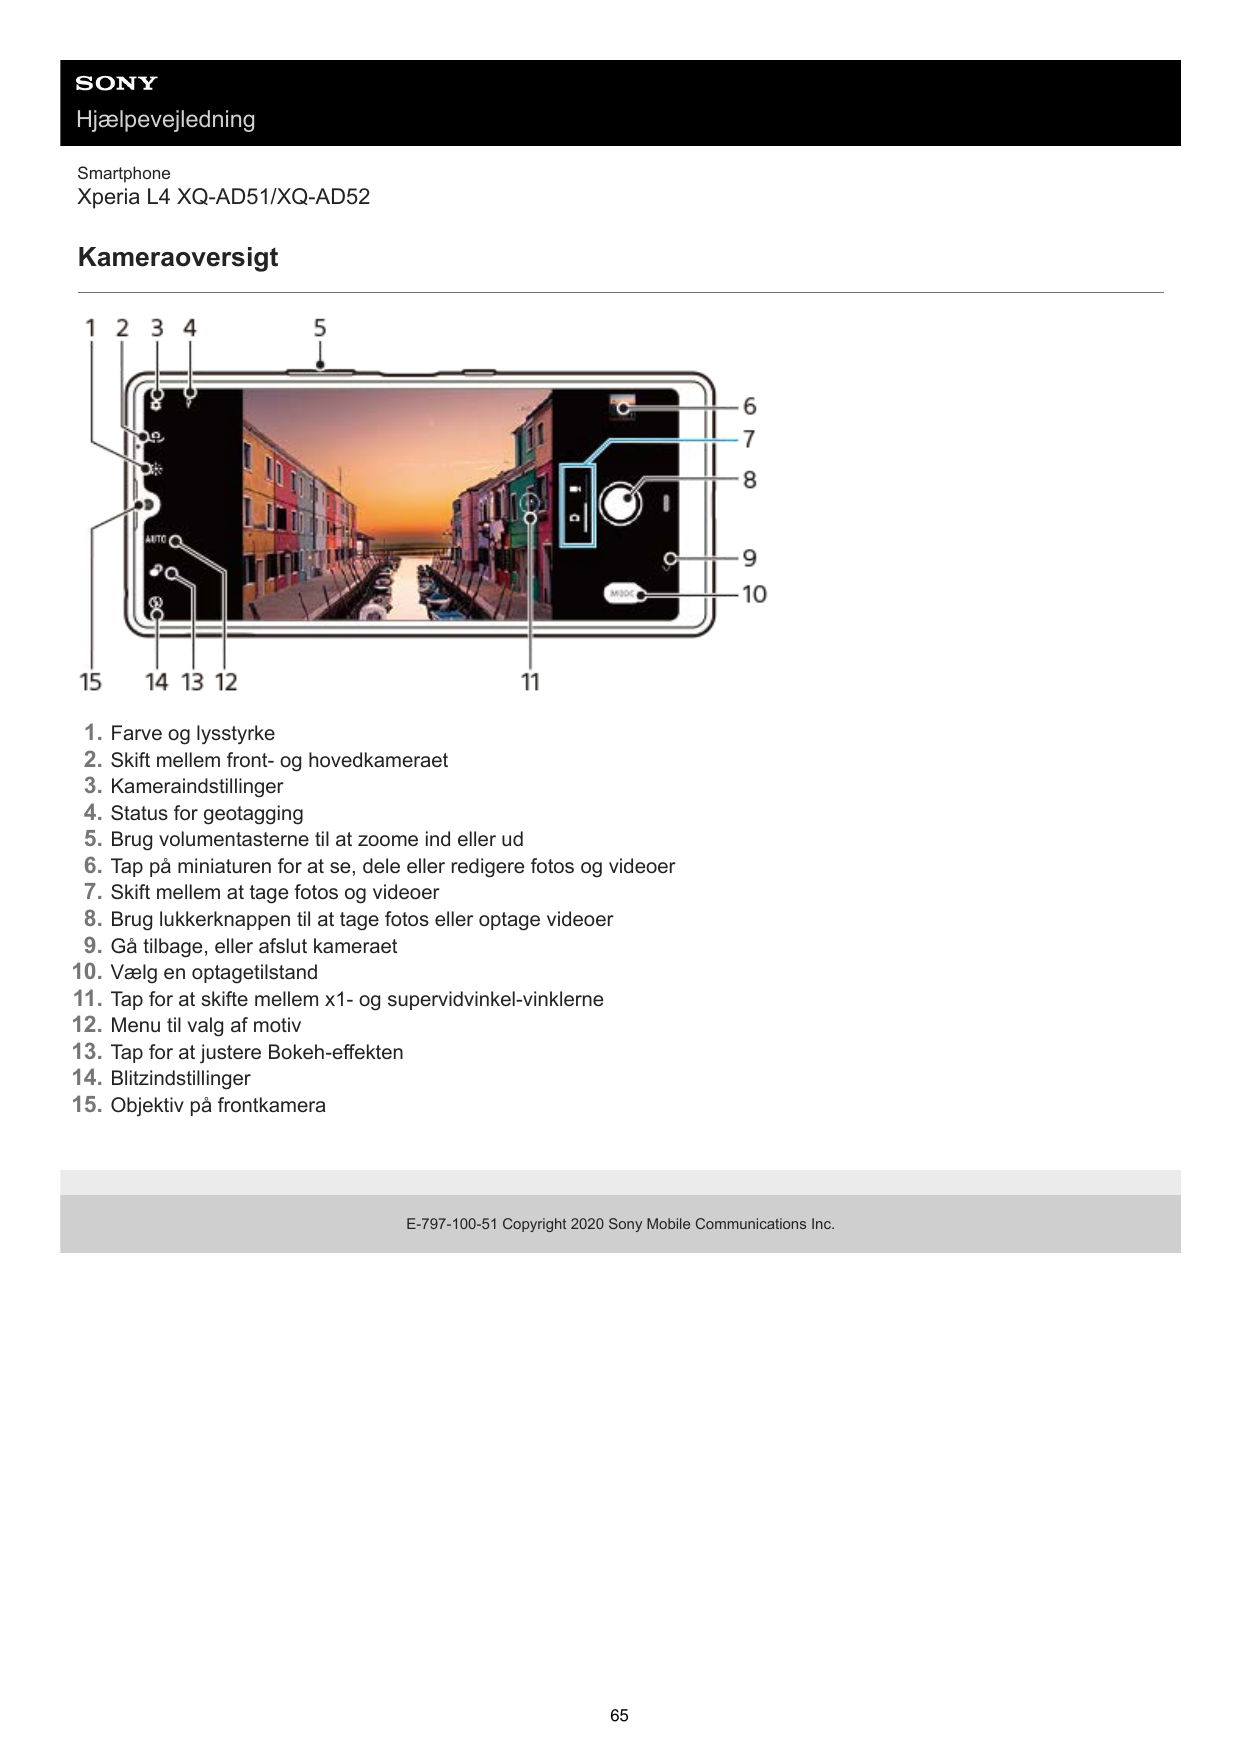 HjælpevejledningSmartphoneXperia L4 XQ-AD51/XQ-AD52Kameraoversigt1.2.3.4.5.6.7.8.9.10.11.12.13.14.15.Farve og lysstyrkeSkift mel